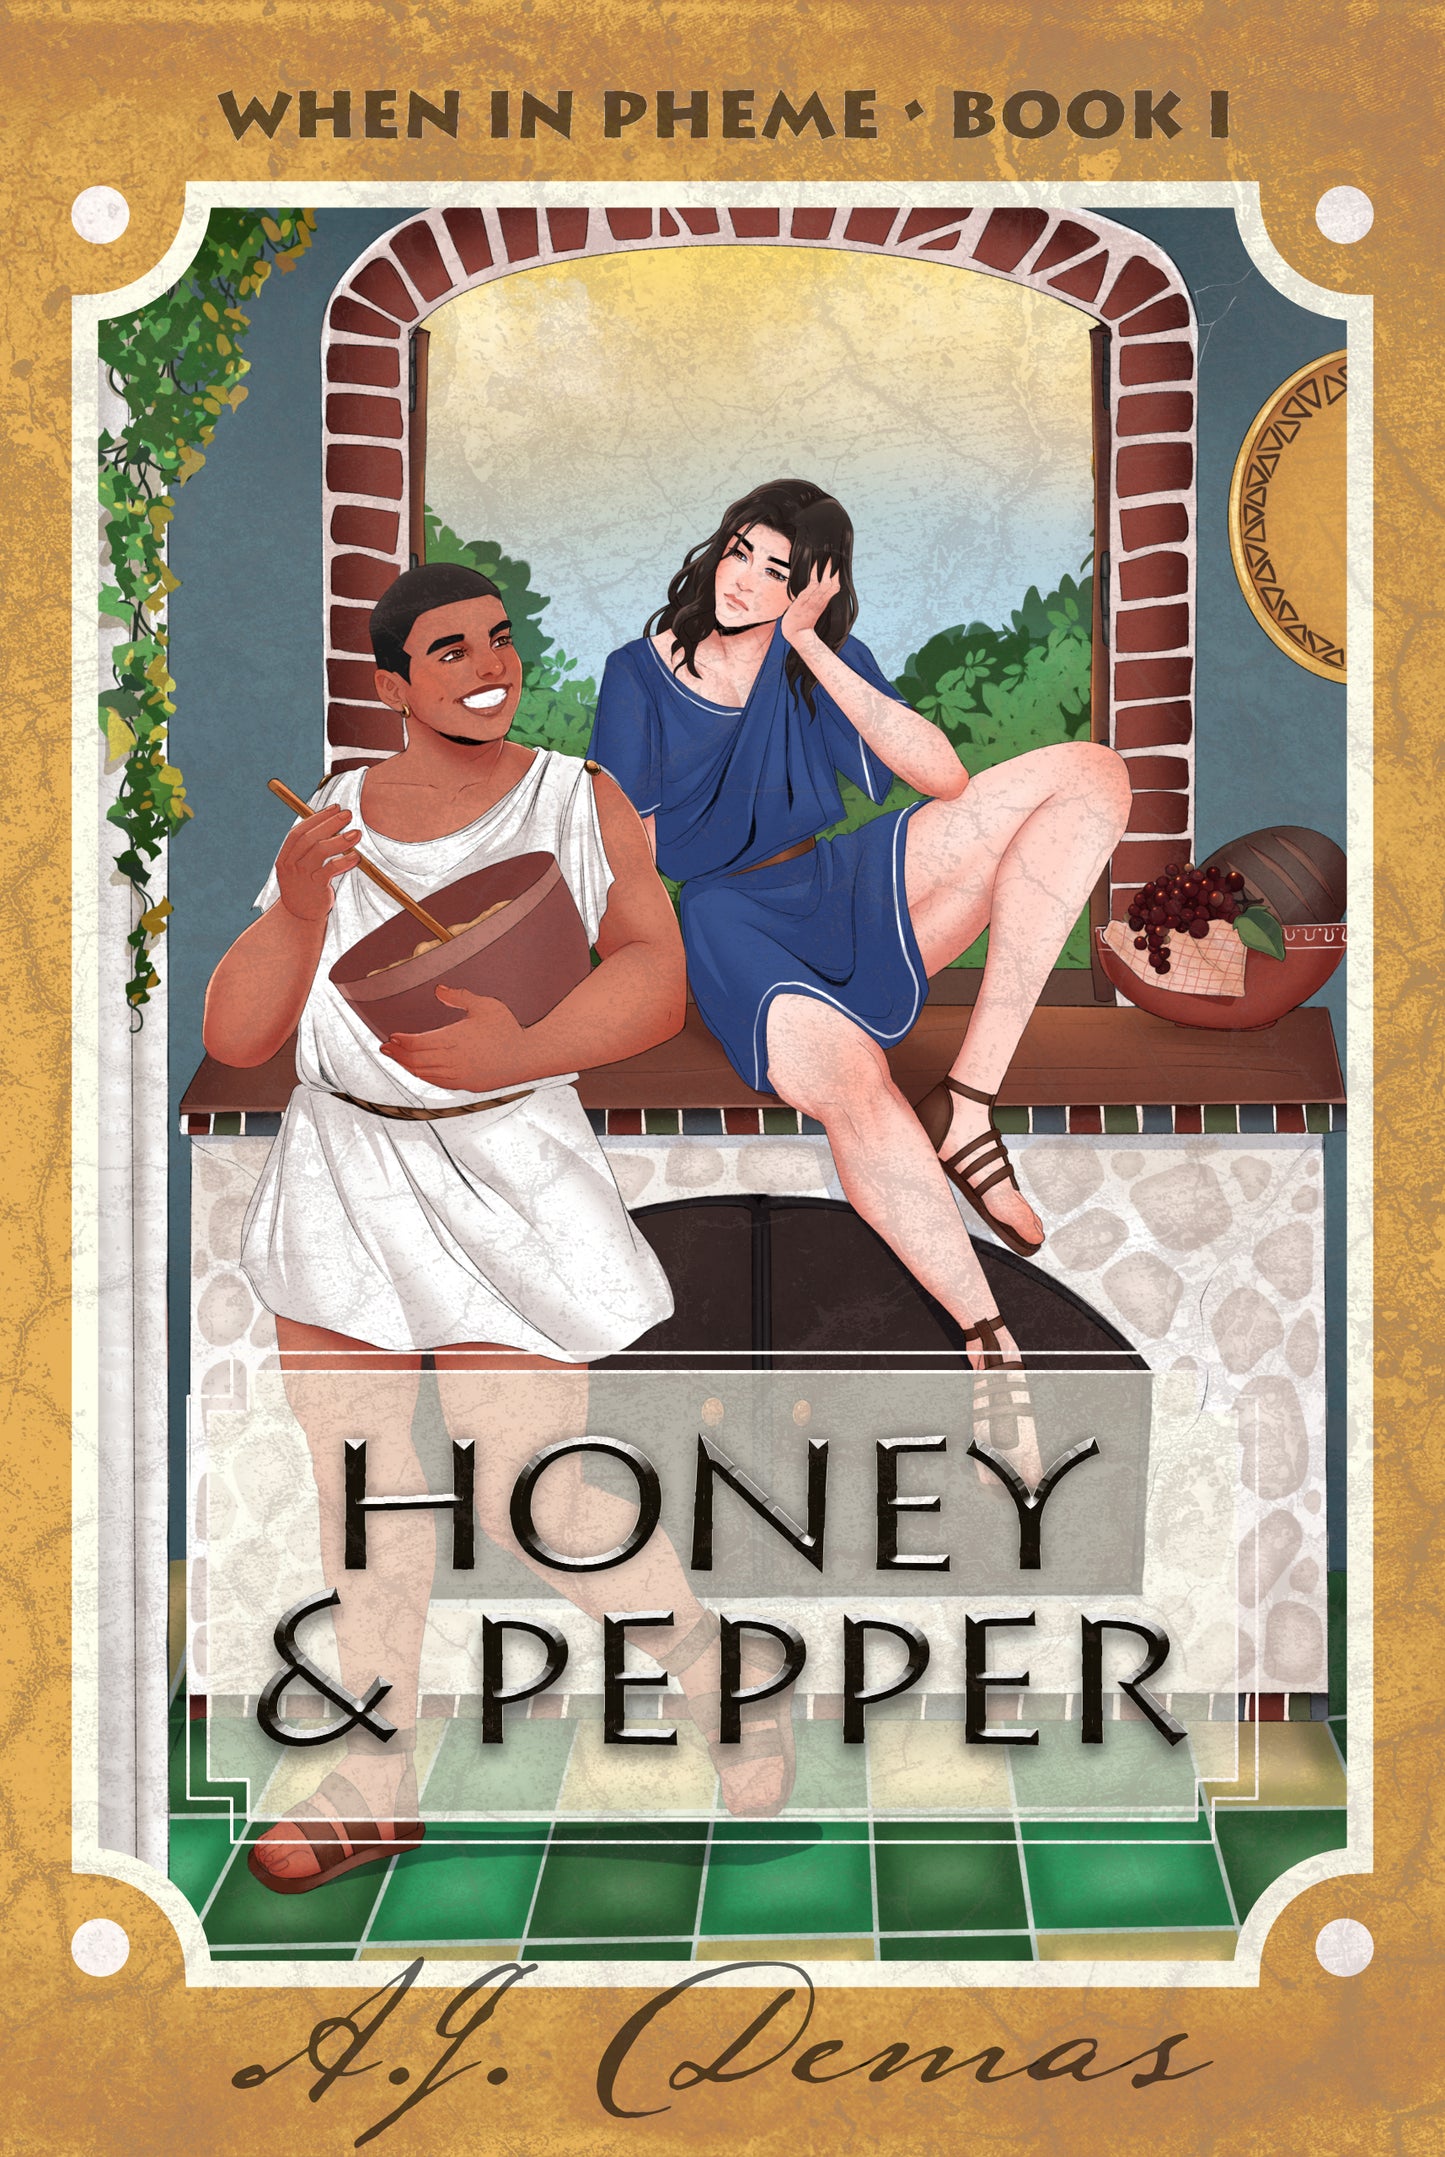 Honey & Pepper